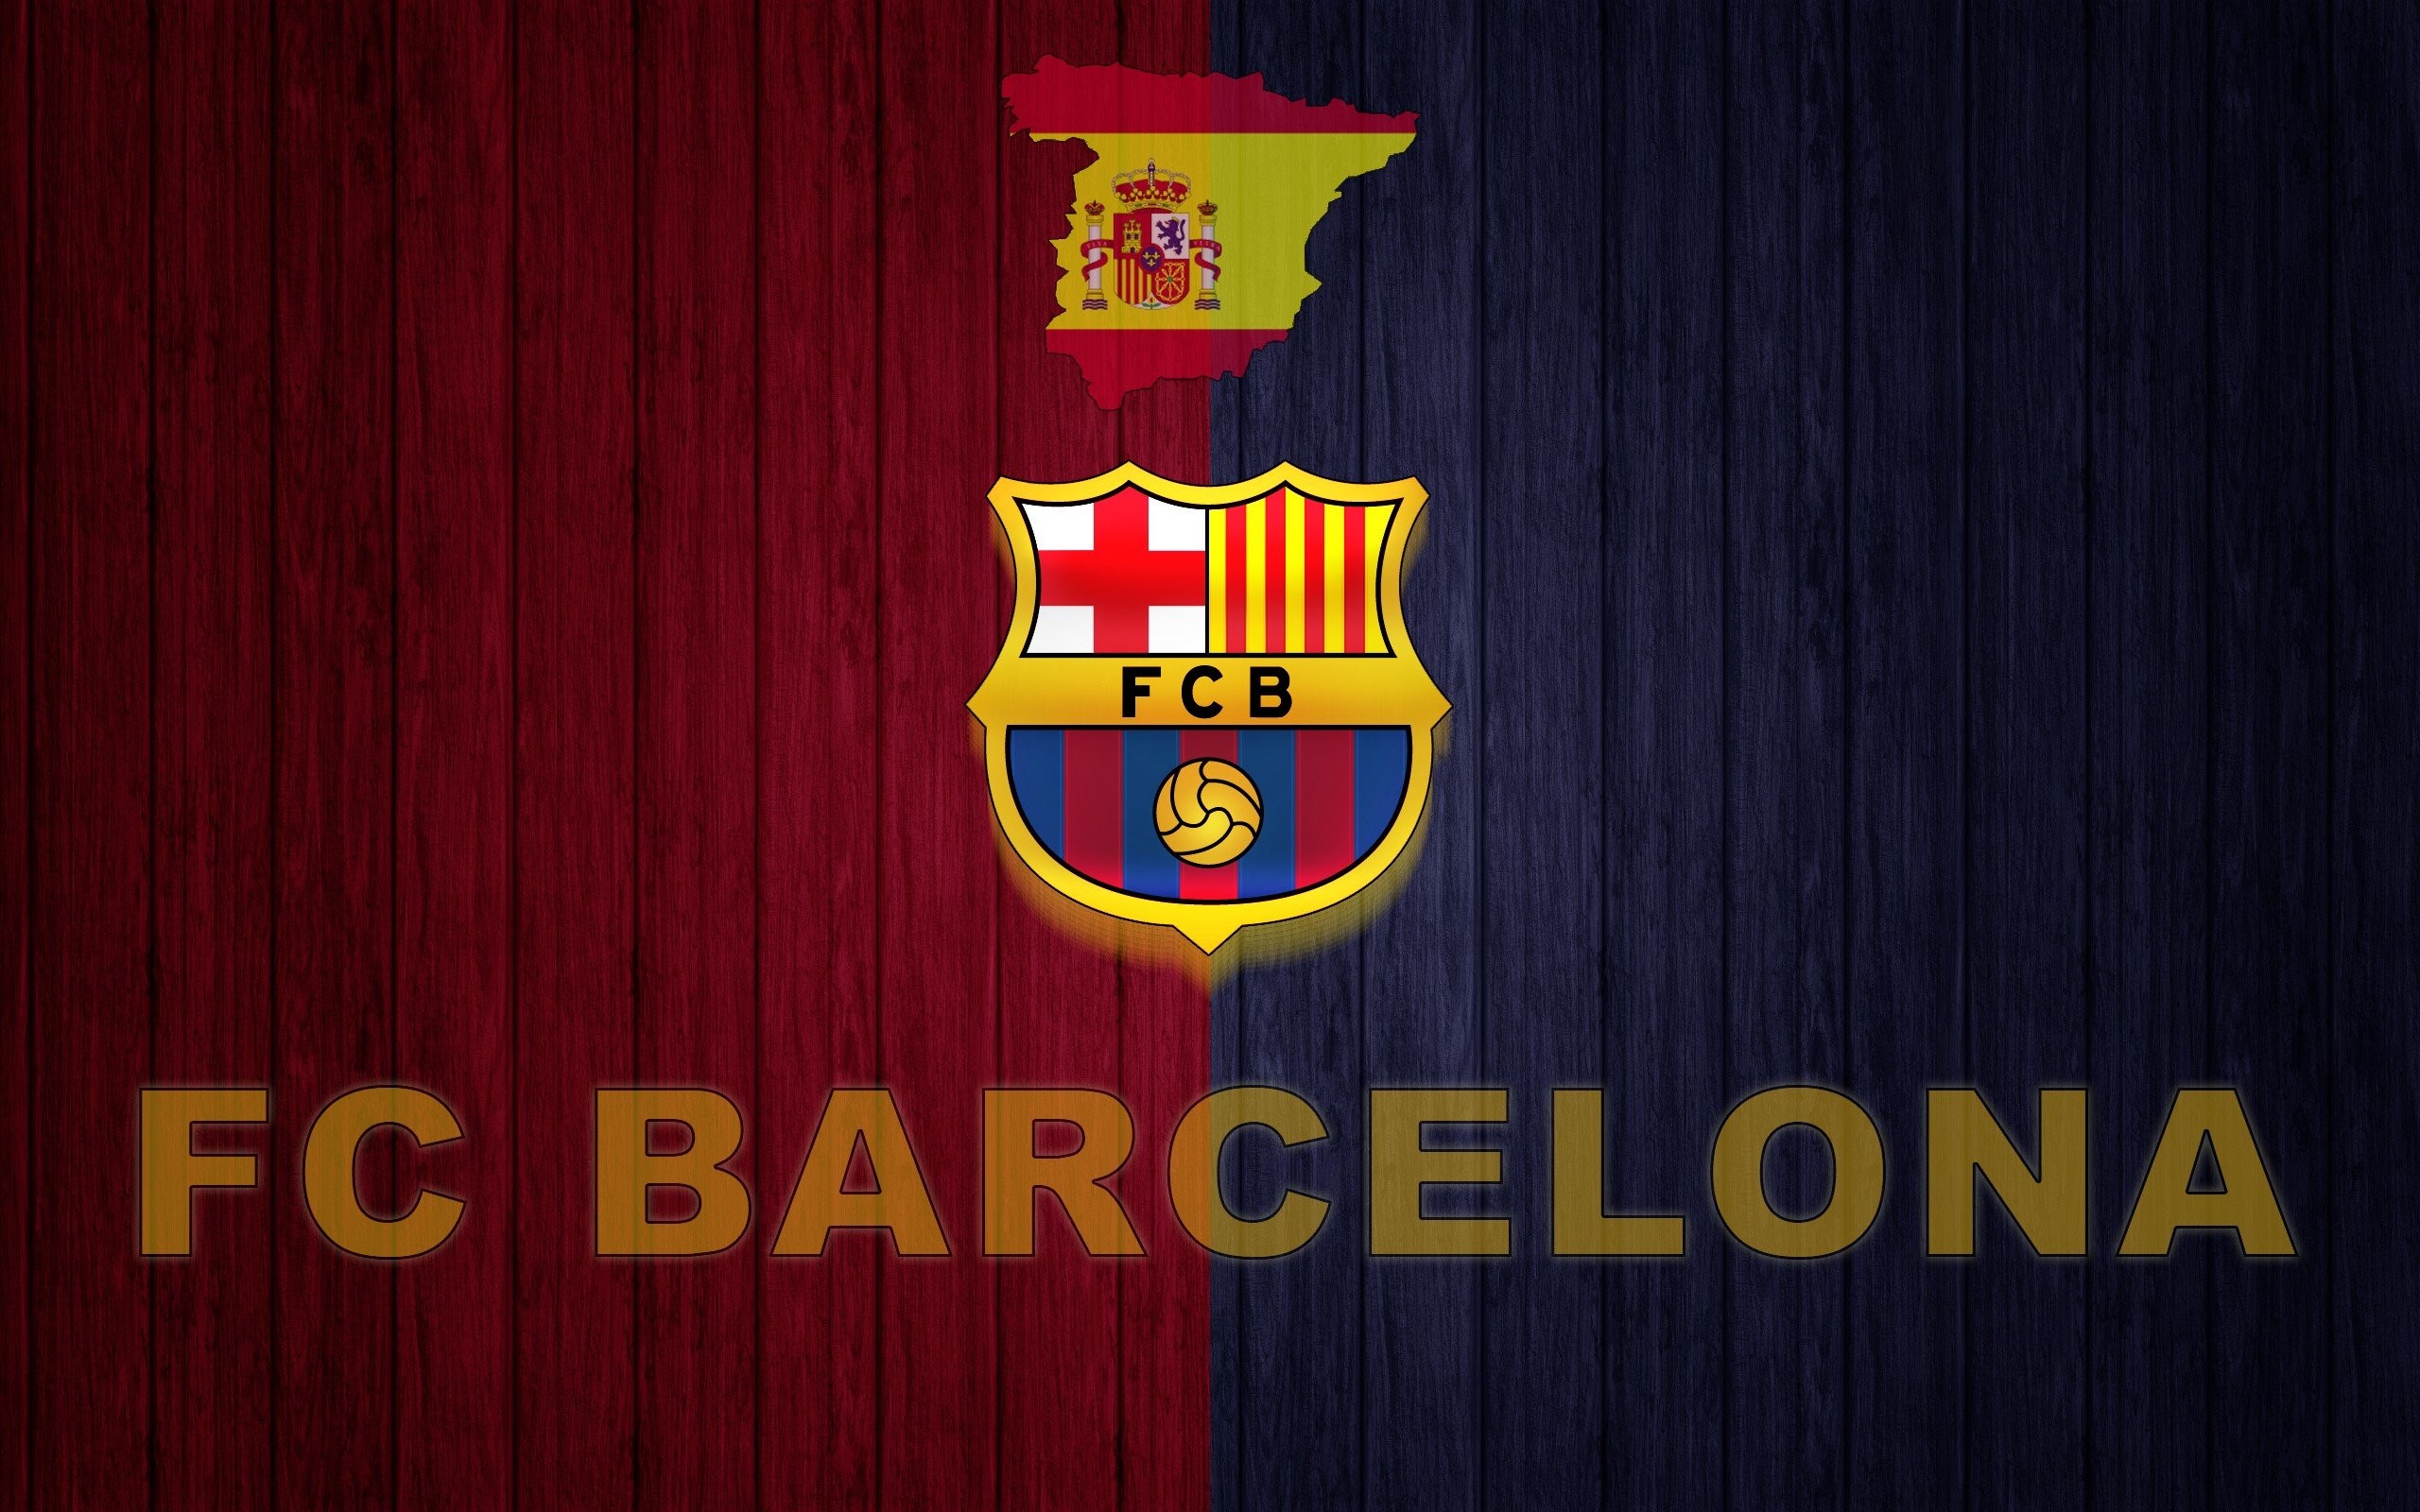 Barcelona, Fc Barcelona, Spain, Soccer Clubs, Soccer, - Fc Barcelona Wallpaper 2018 Mac - HD Wallpaper 